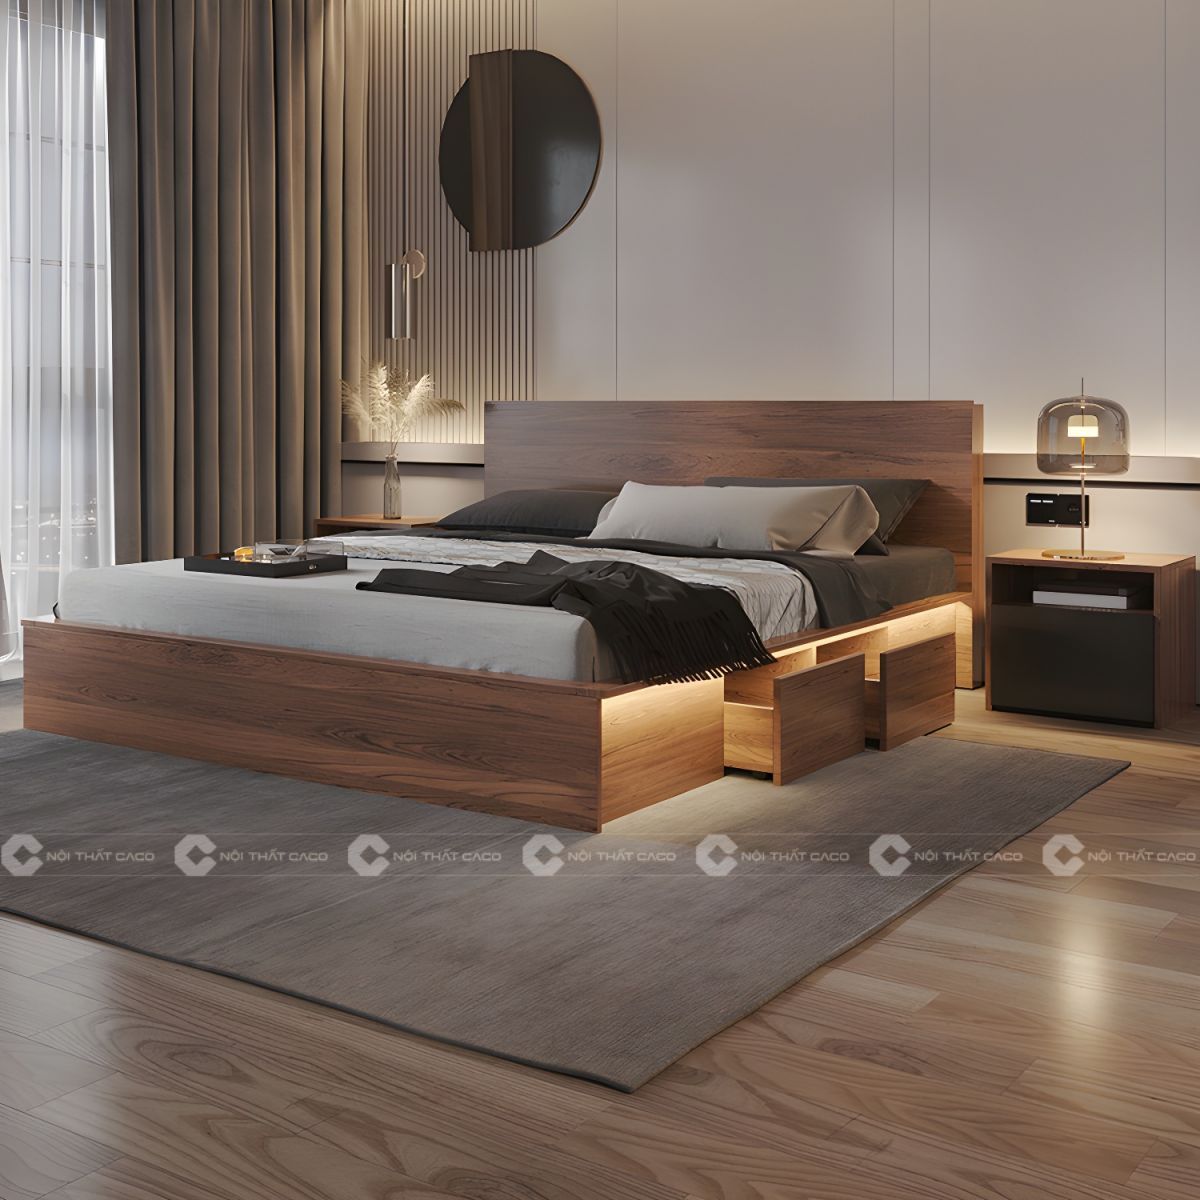 Giường ngủ gỗ công nghiệp có hộc kéo thông minh